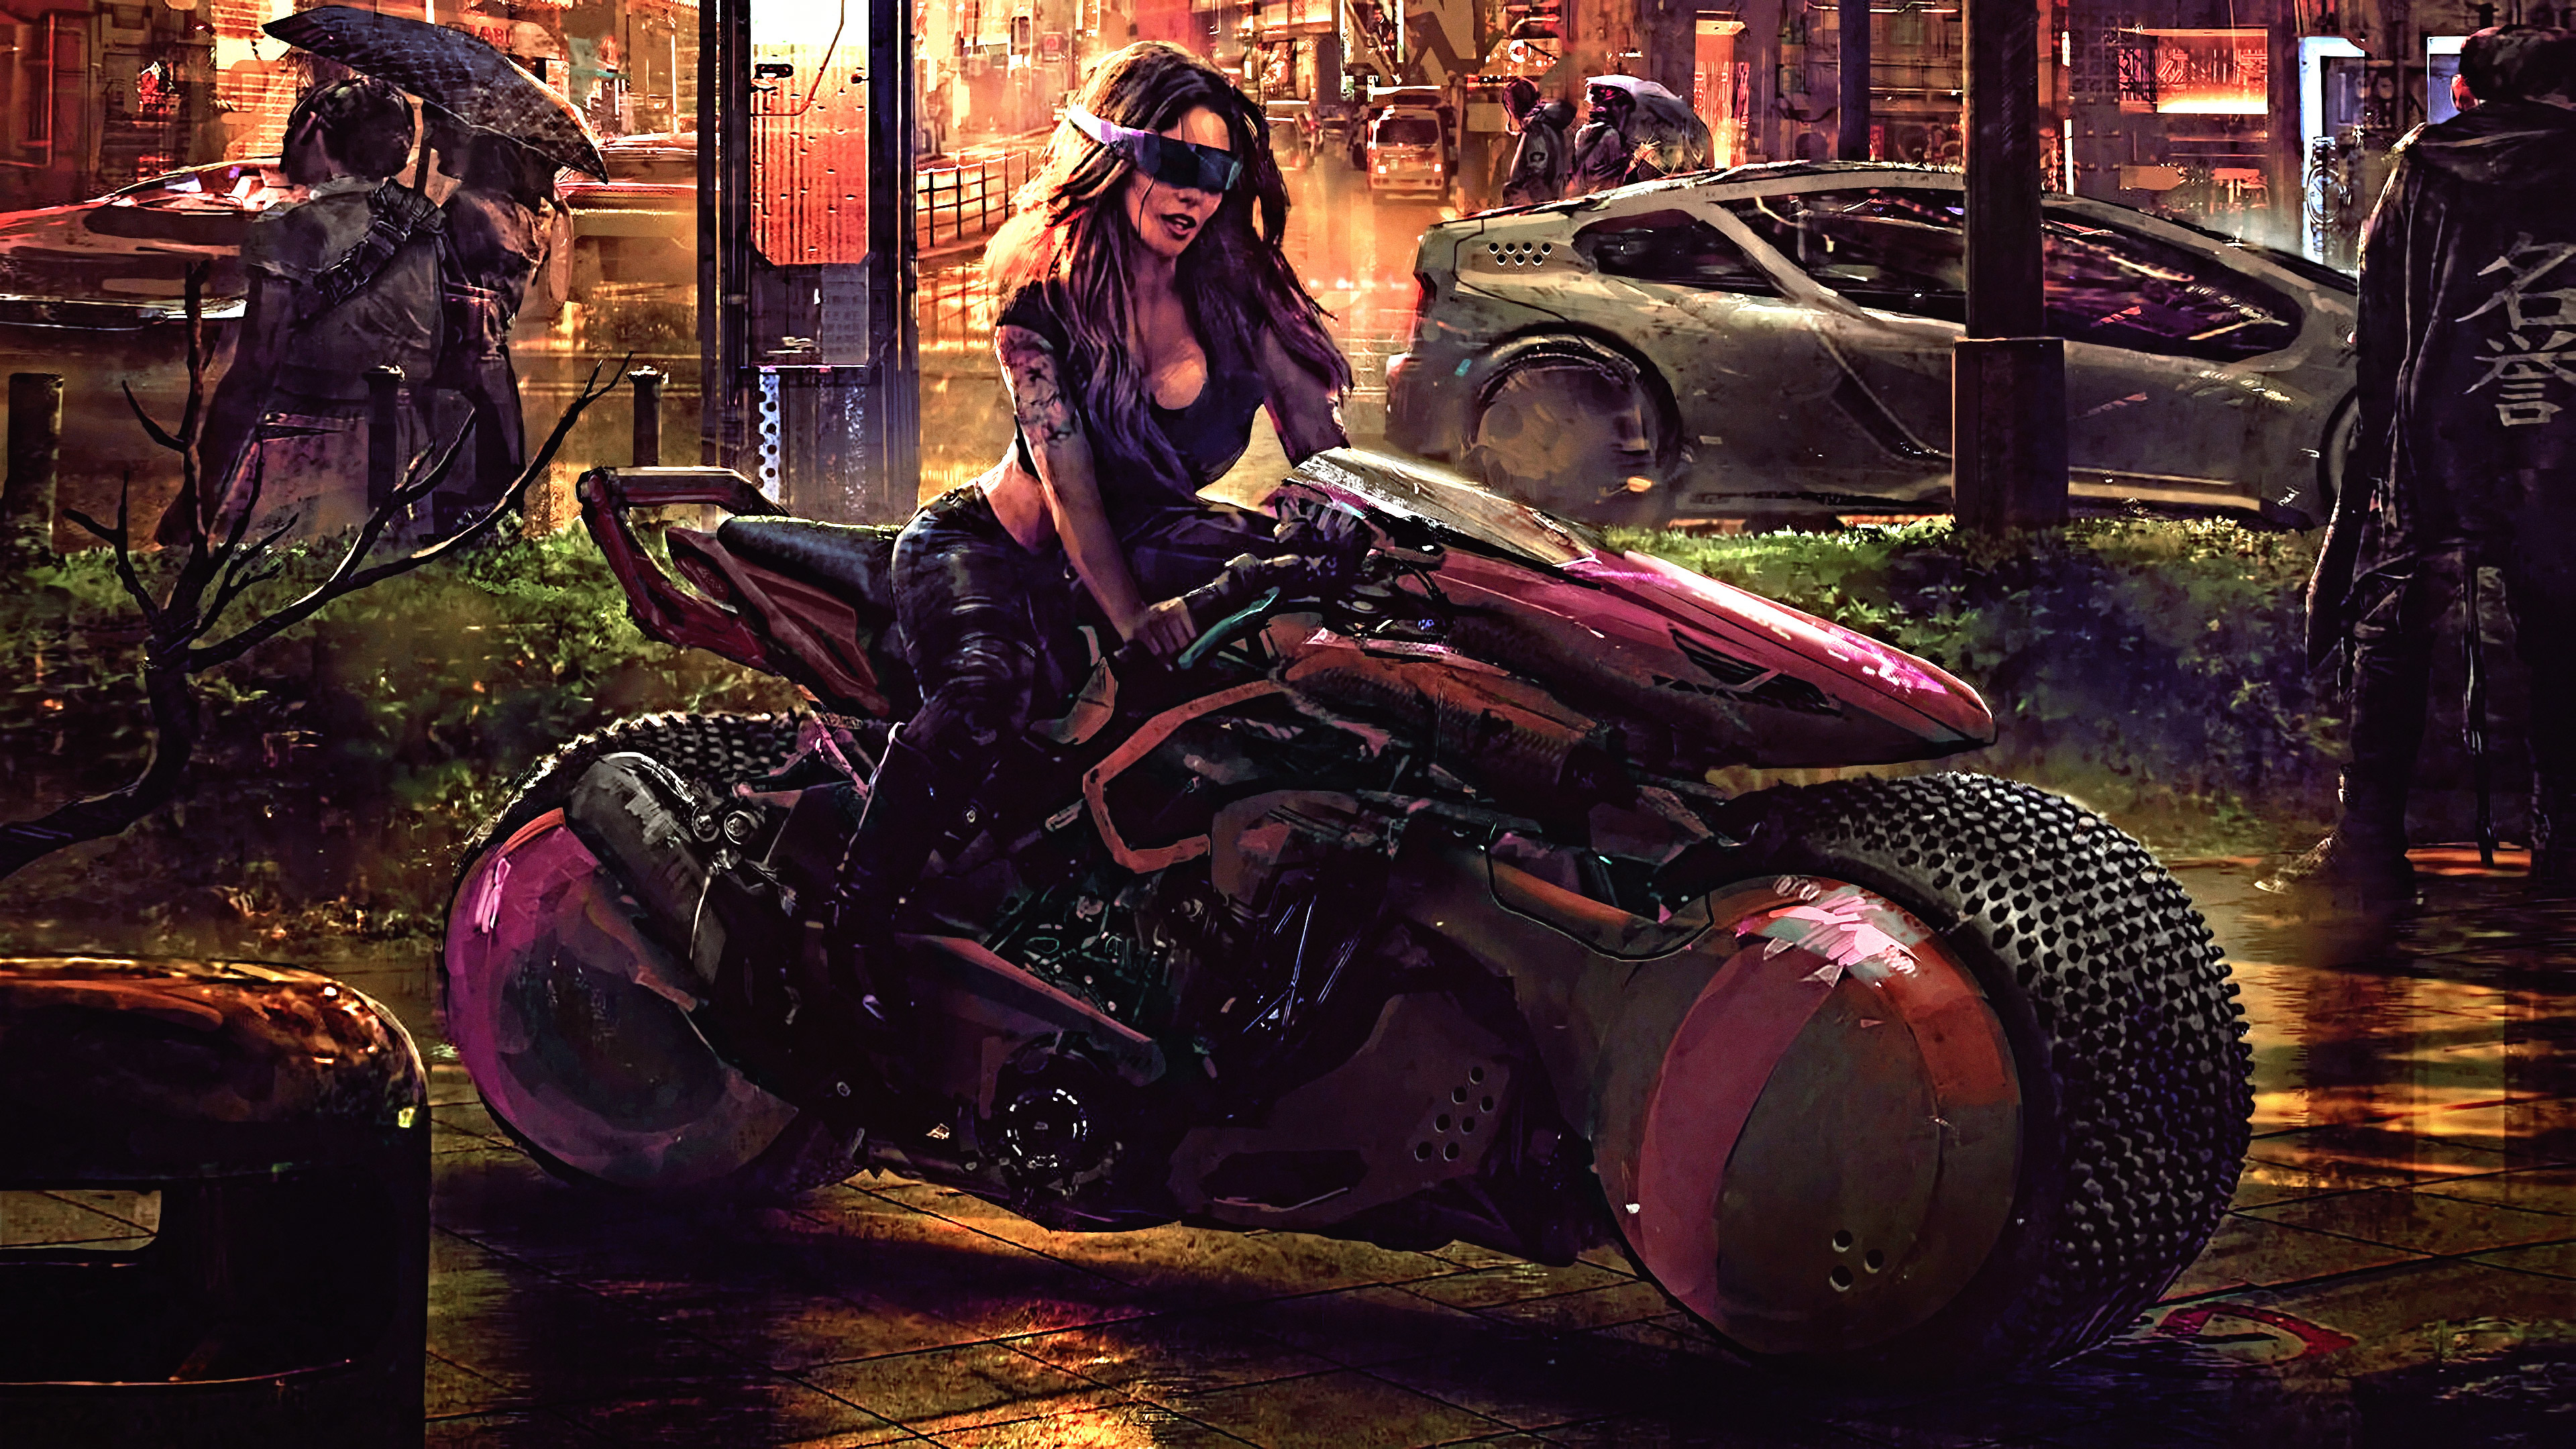 Cyberpunk Girl Biker New 2020 Wallpaper,HD Artist Wallpapers,4k